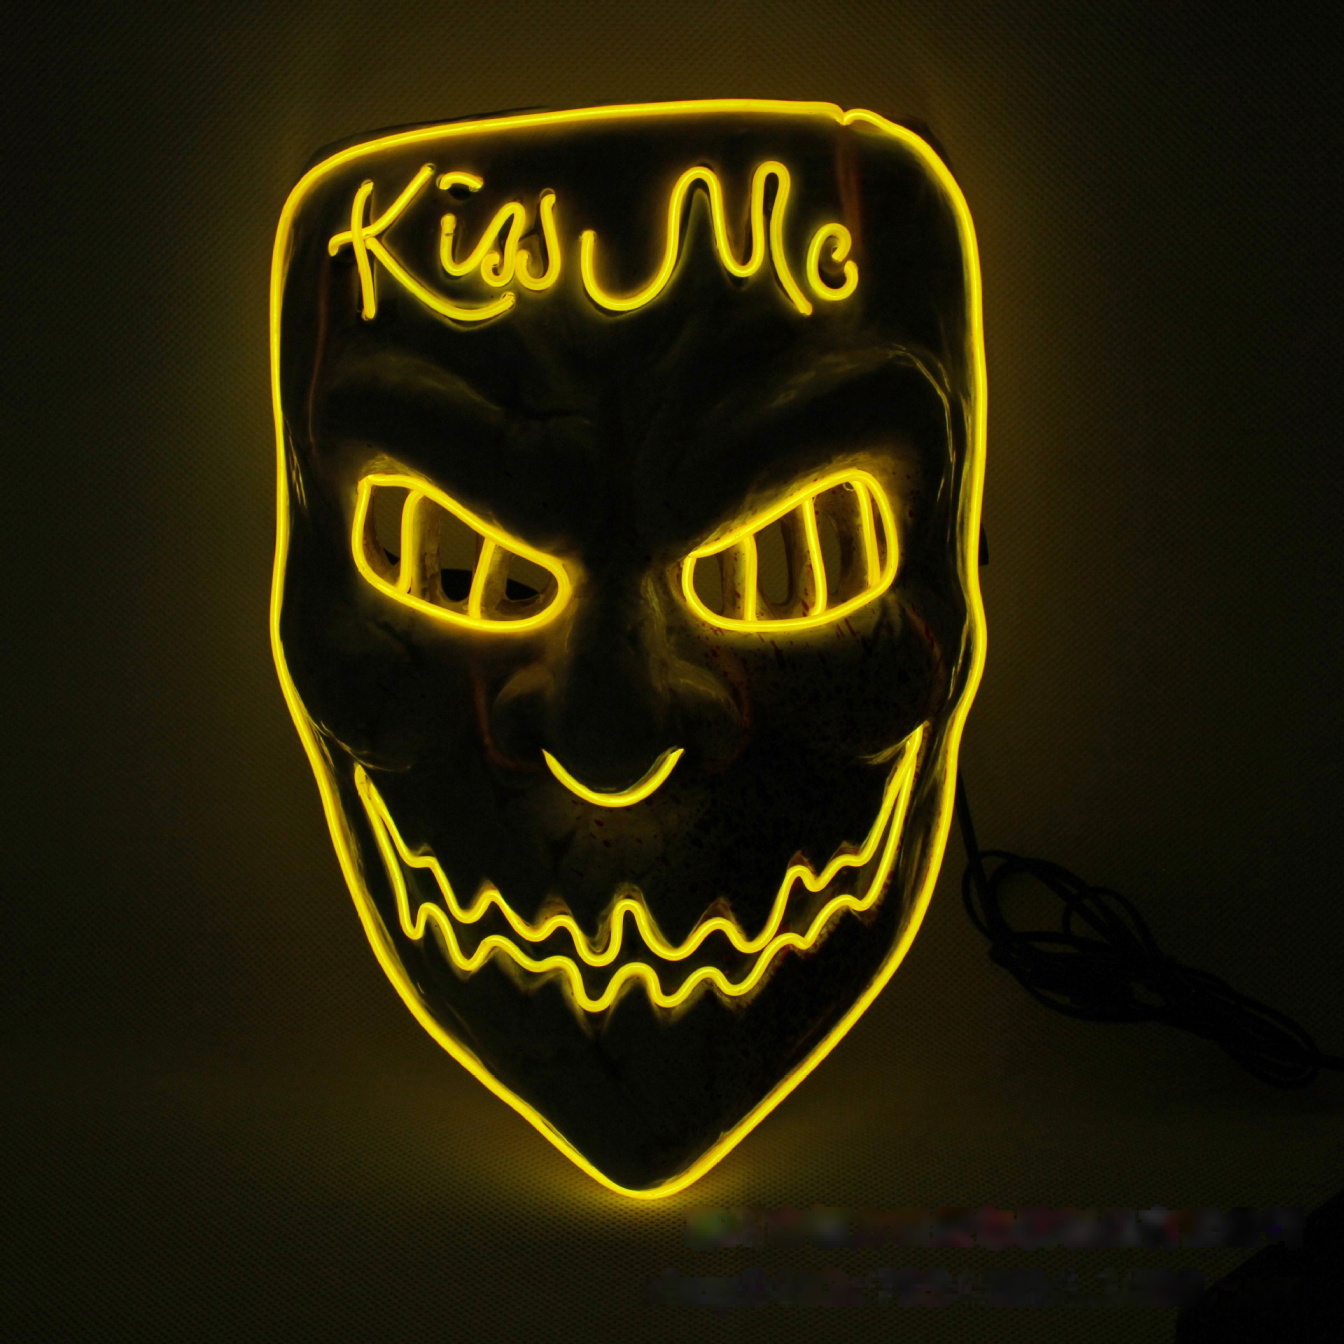 Led Luminous The Purge Kiss Me Mask Pp Full Face Mask Costume Play